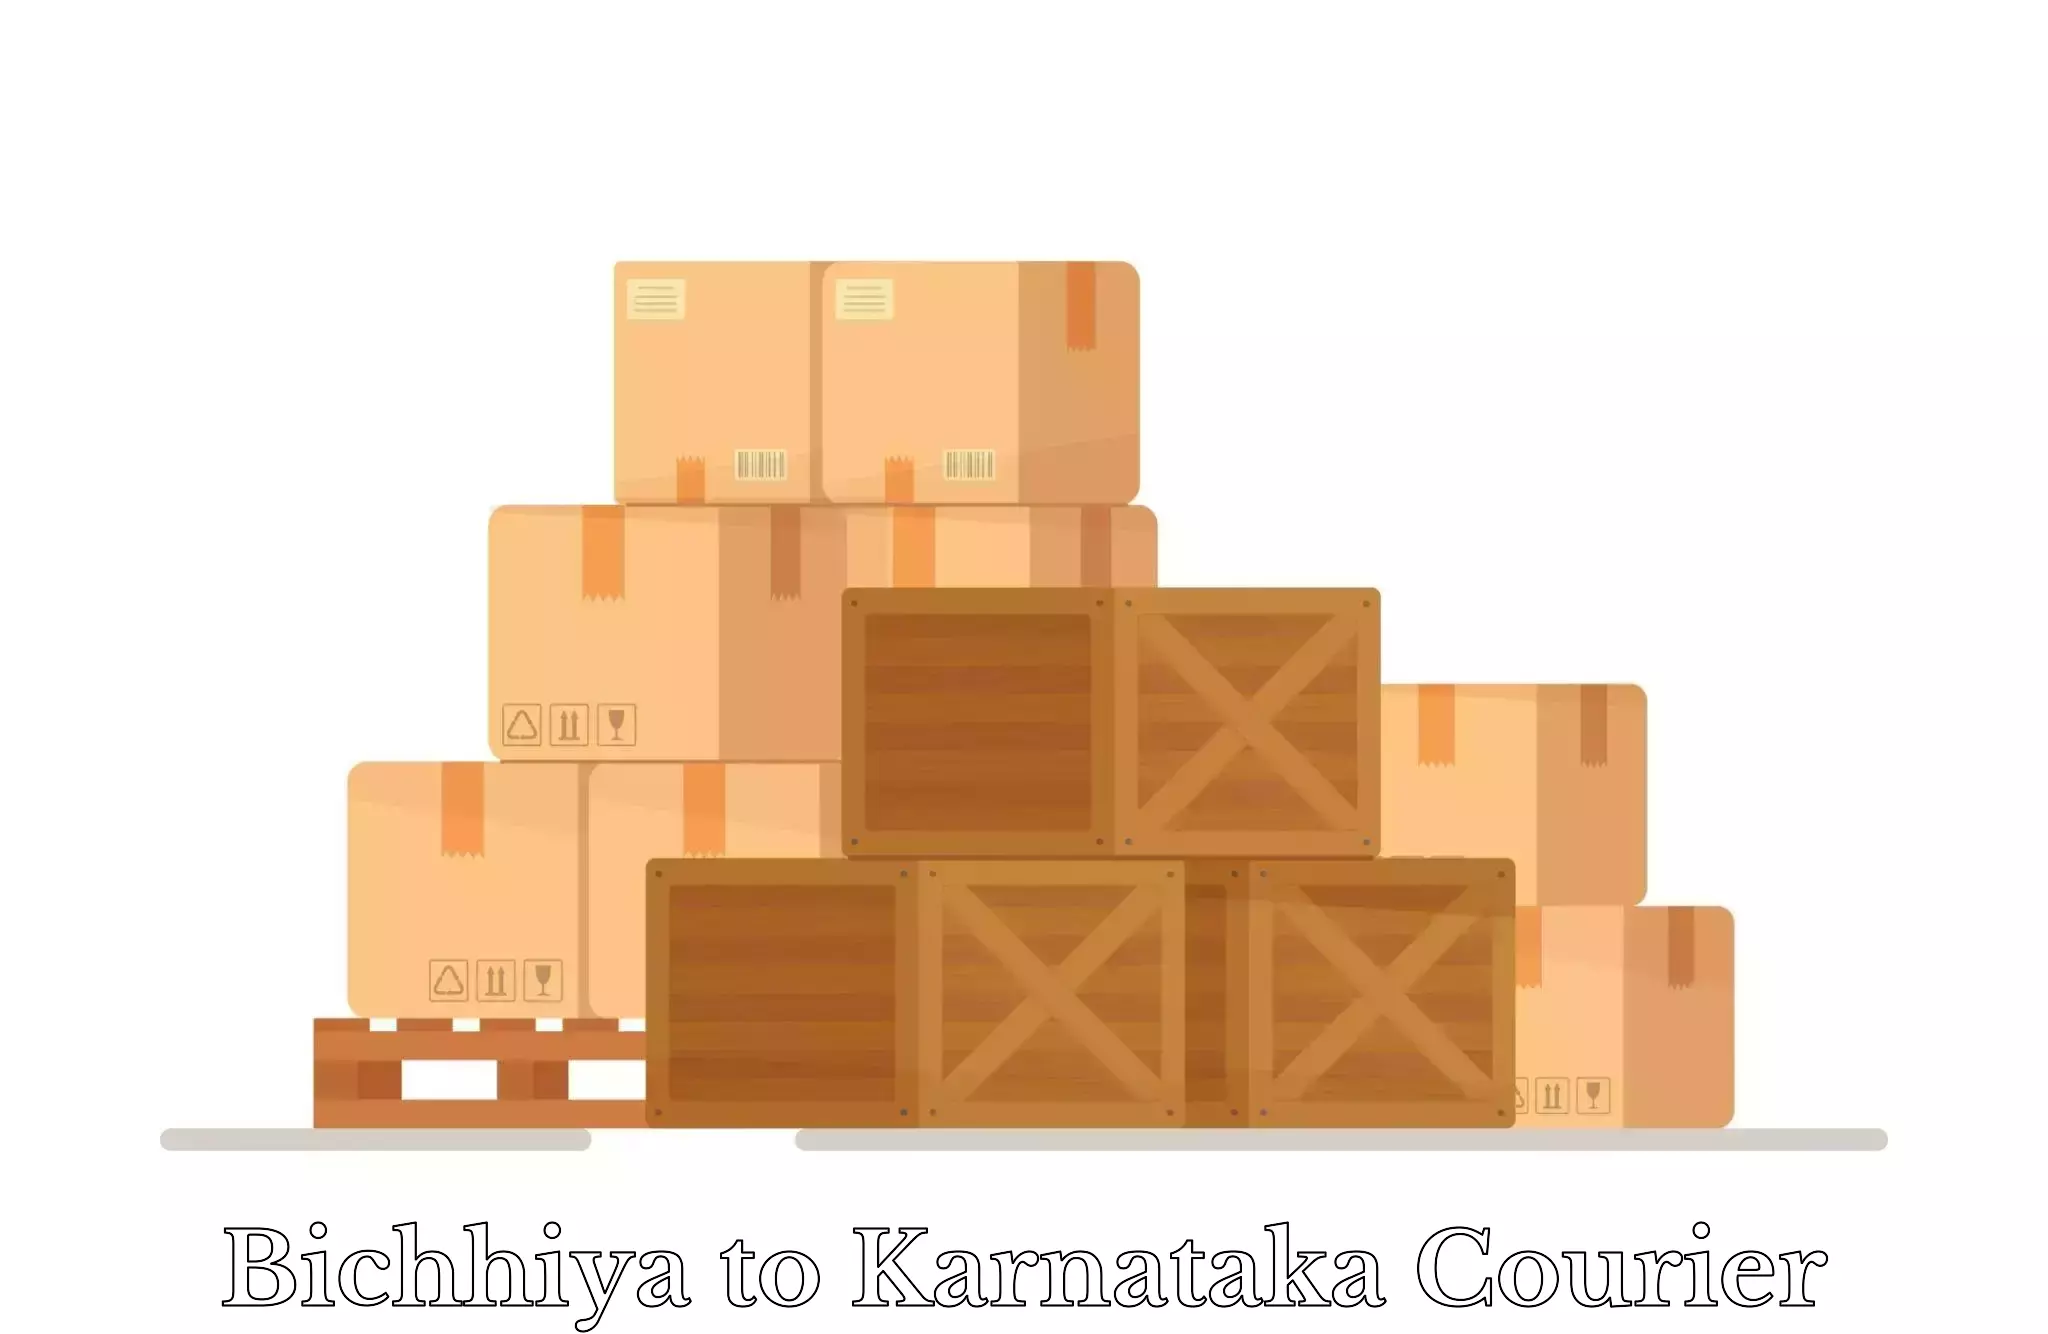 Luggage transport guidelines Bichhiya to Karnataka